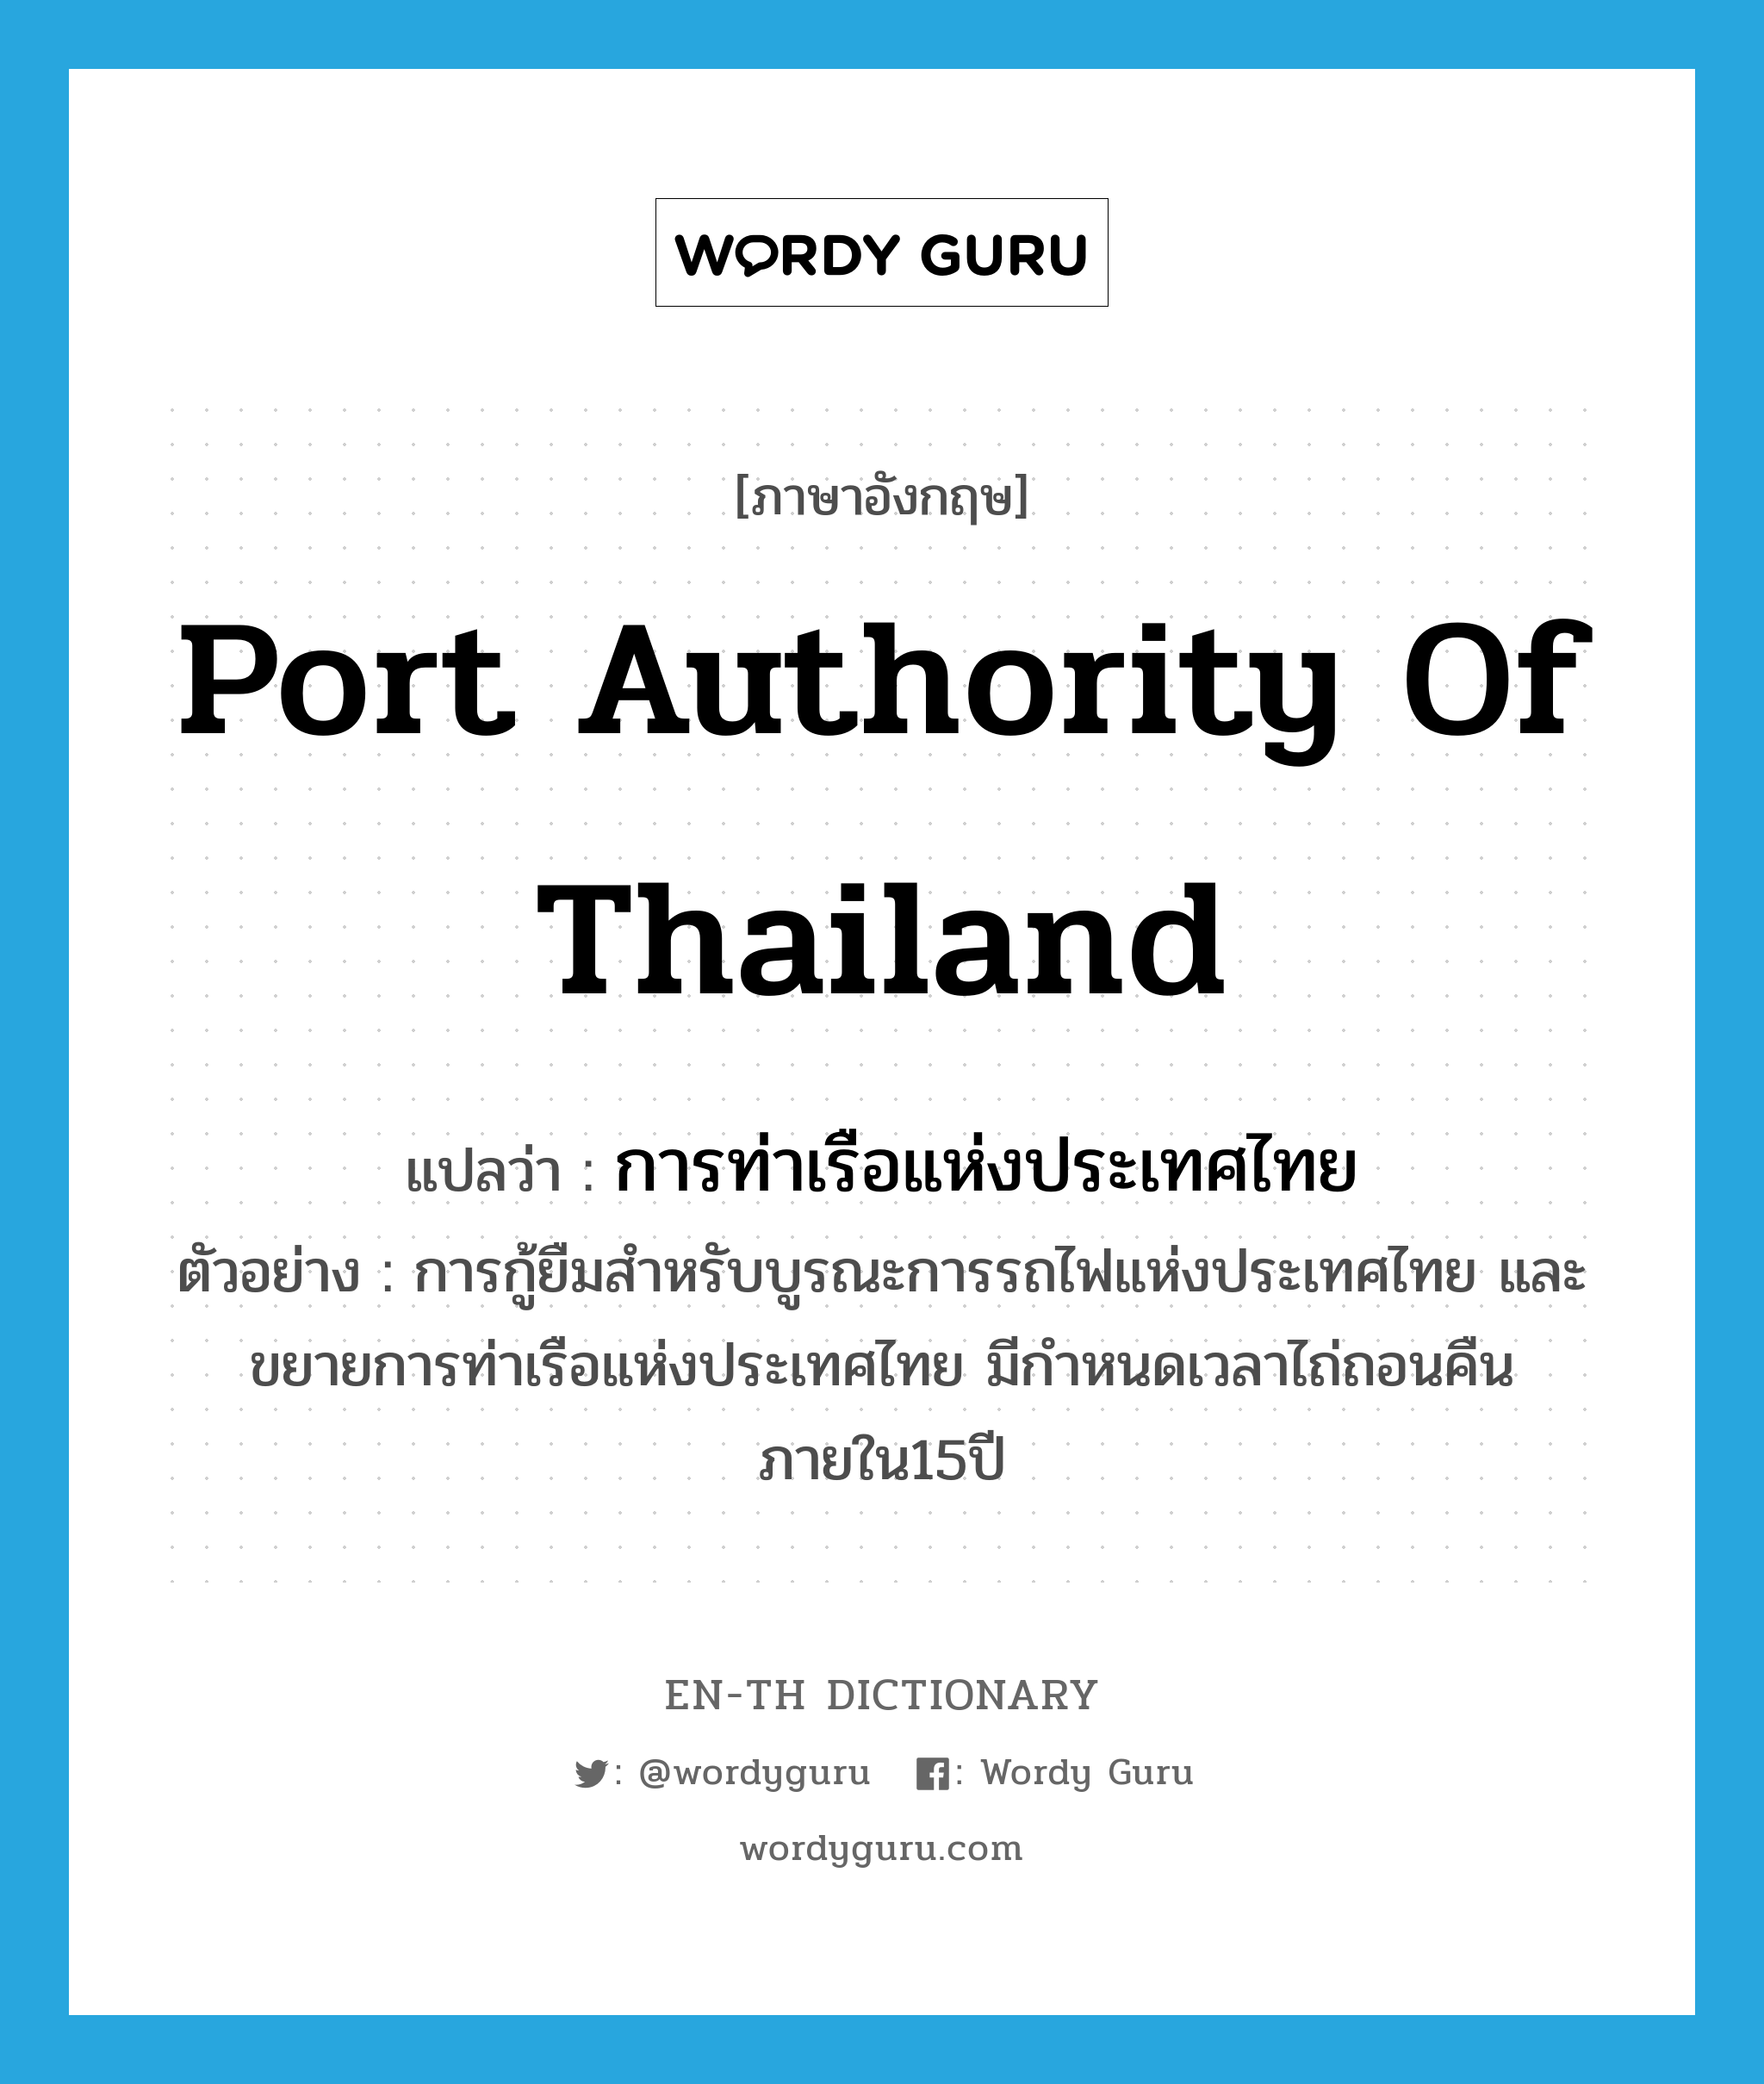 การท่าเรือแห่งประเทศไทย ภาษาอังกฤษ?, คำศัพท์ภาษาอังกฤษ การท่าเรือแห่งประเทศไทย แปลว่า Port Authority of Thailand ประเภท N ตัวอย่าง การกู้ยืมสำหรับบูรณะการรถไฟแห่งประเทศไทย และขยายการท่าเรือแห่งประเทศไทย มีกำหนดเวลาไถ่ถอนคืนภายใน15ปี หมวด N